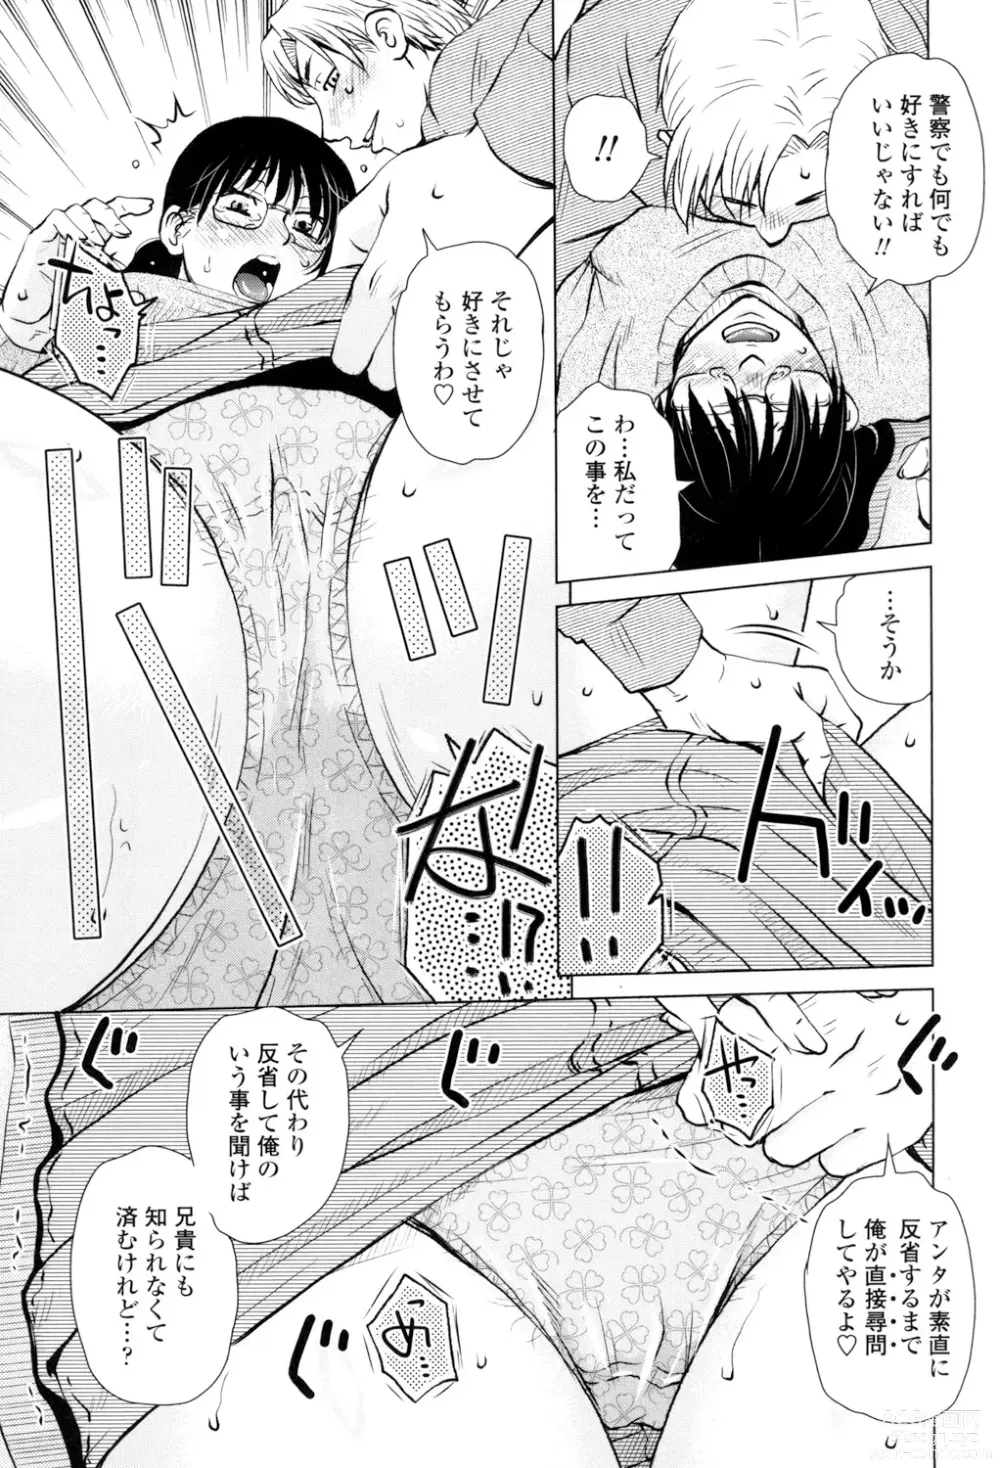 Page 7 of manga Gesu Sex?